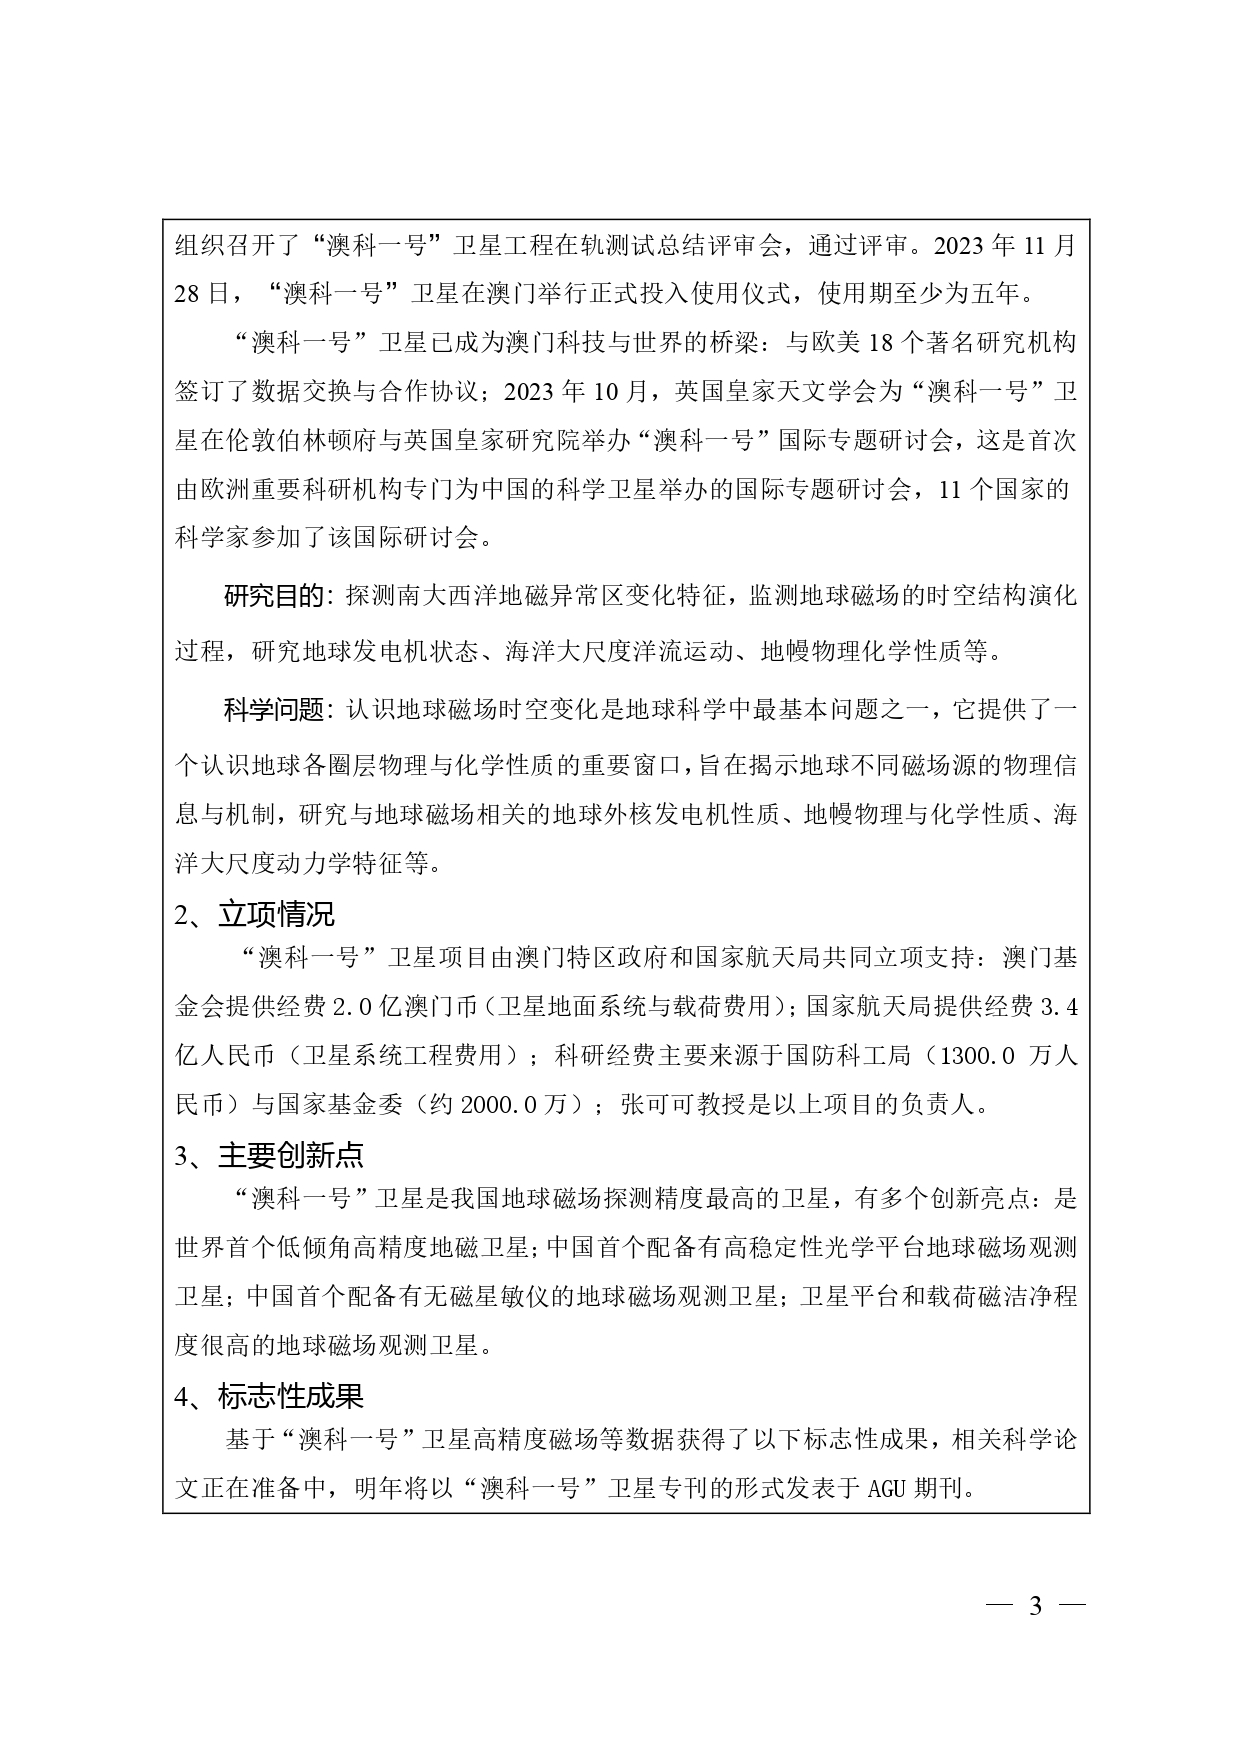 中国高等学校十大科技进展申报表 张可可终版3 page 0003